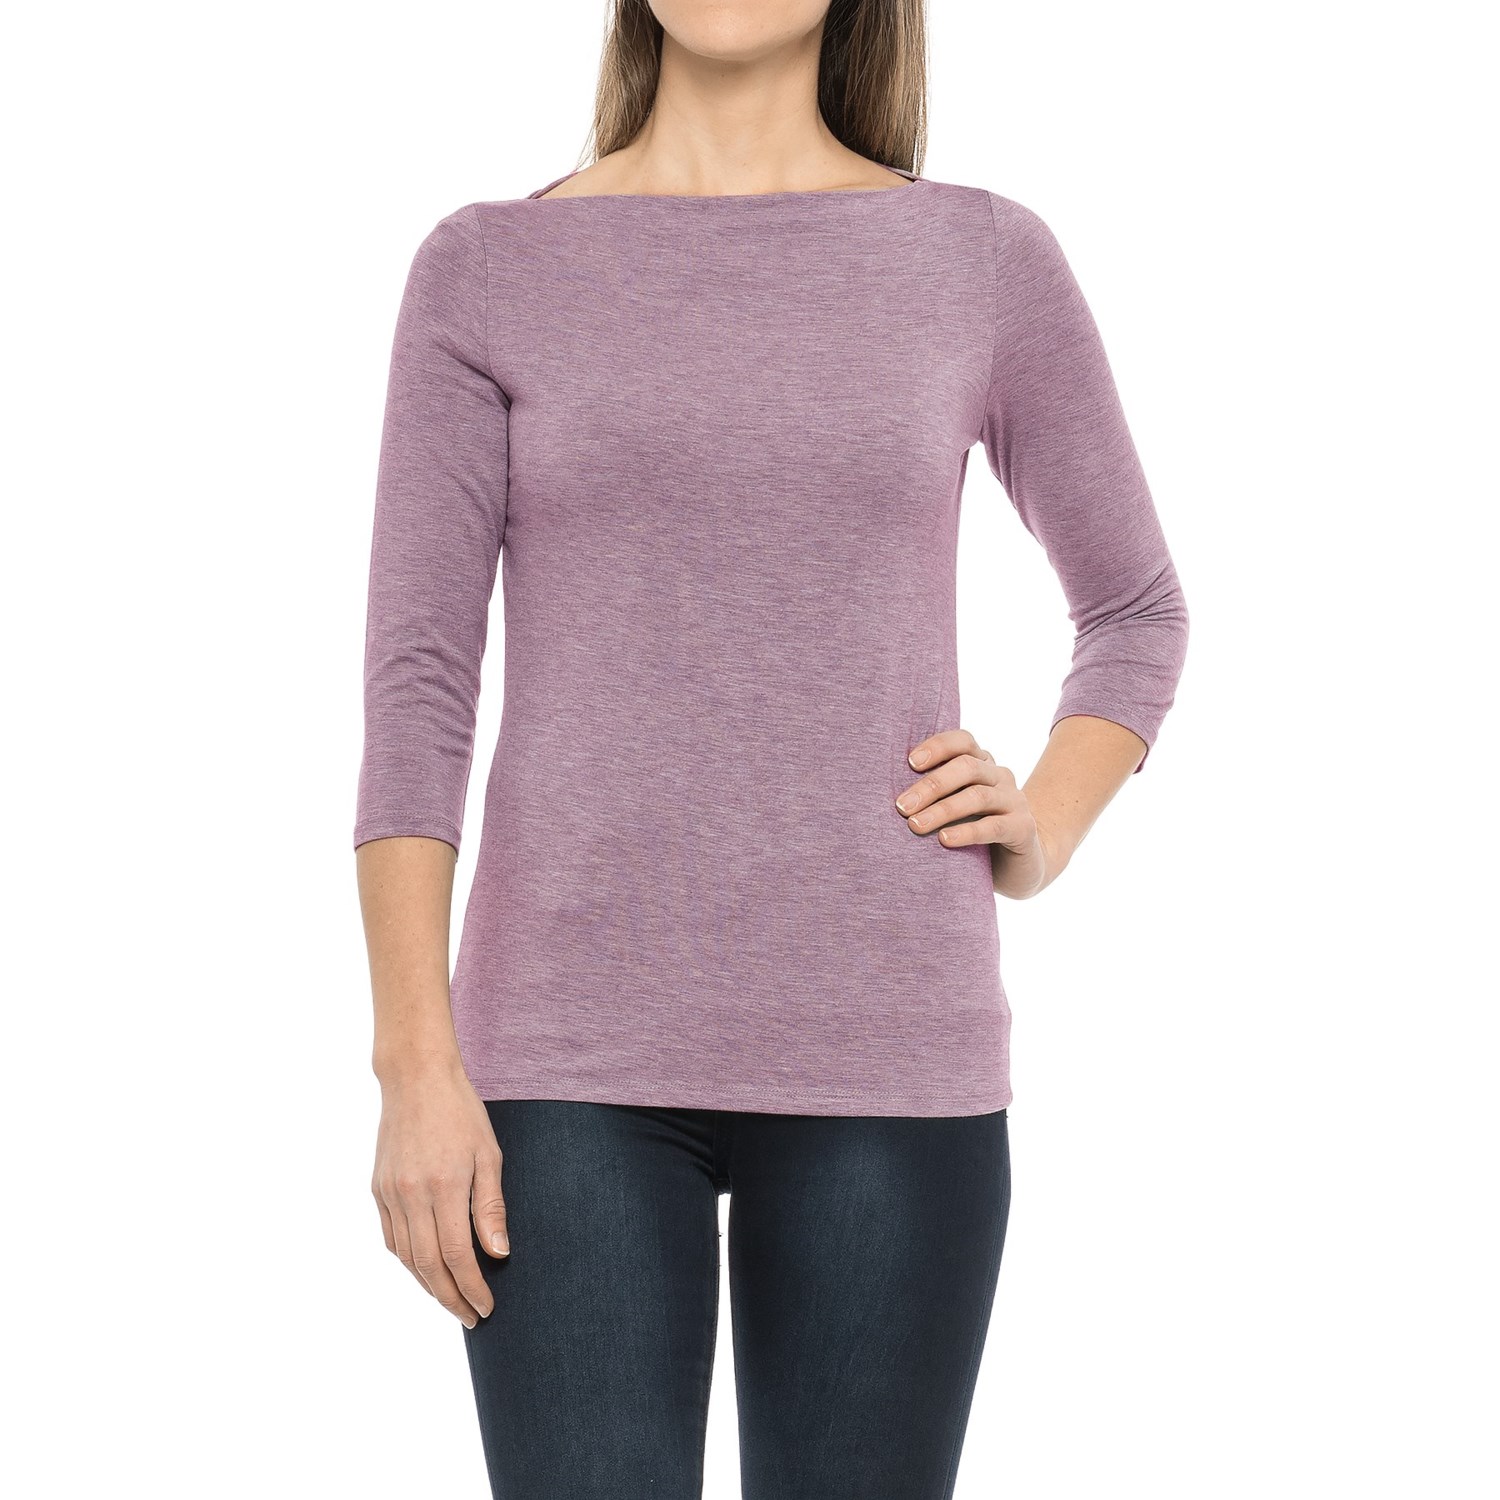 Paraphrase Boat Neck Shirt – Modal, 3/4 Sleeve (For Women)